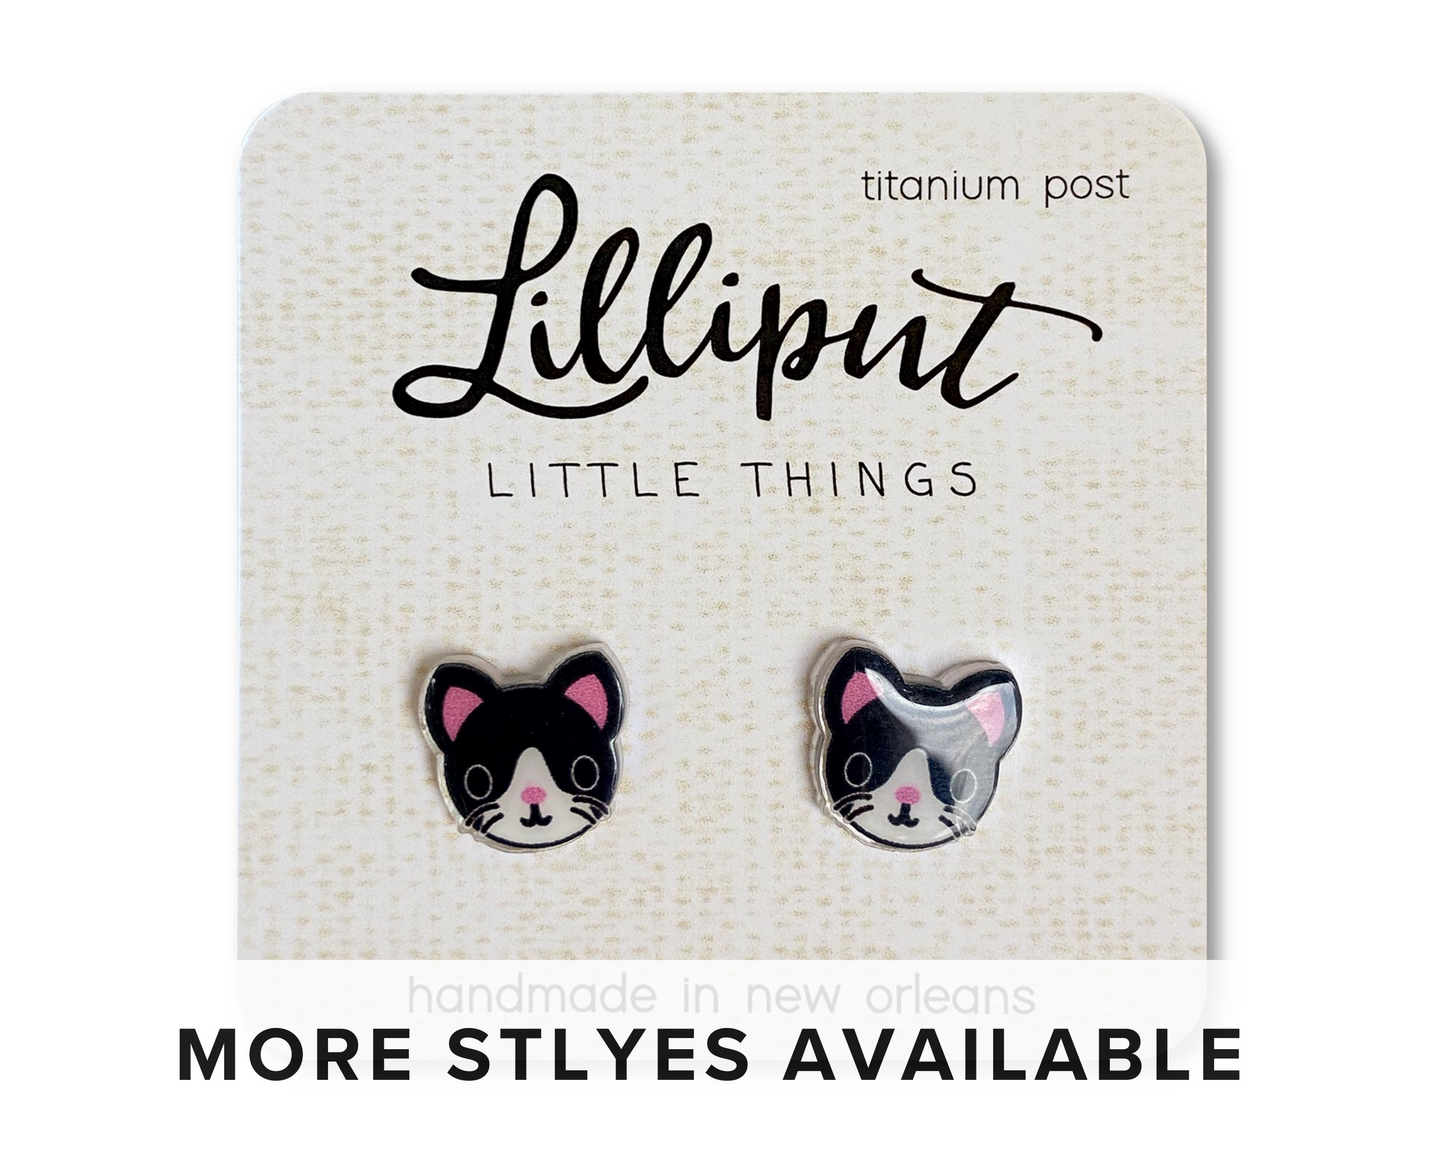 Cute Kitty Cat Earrings